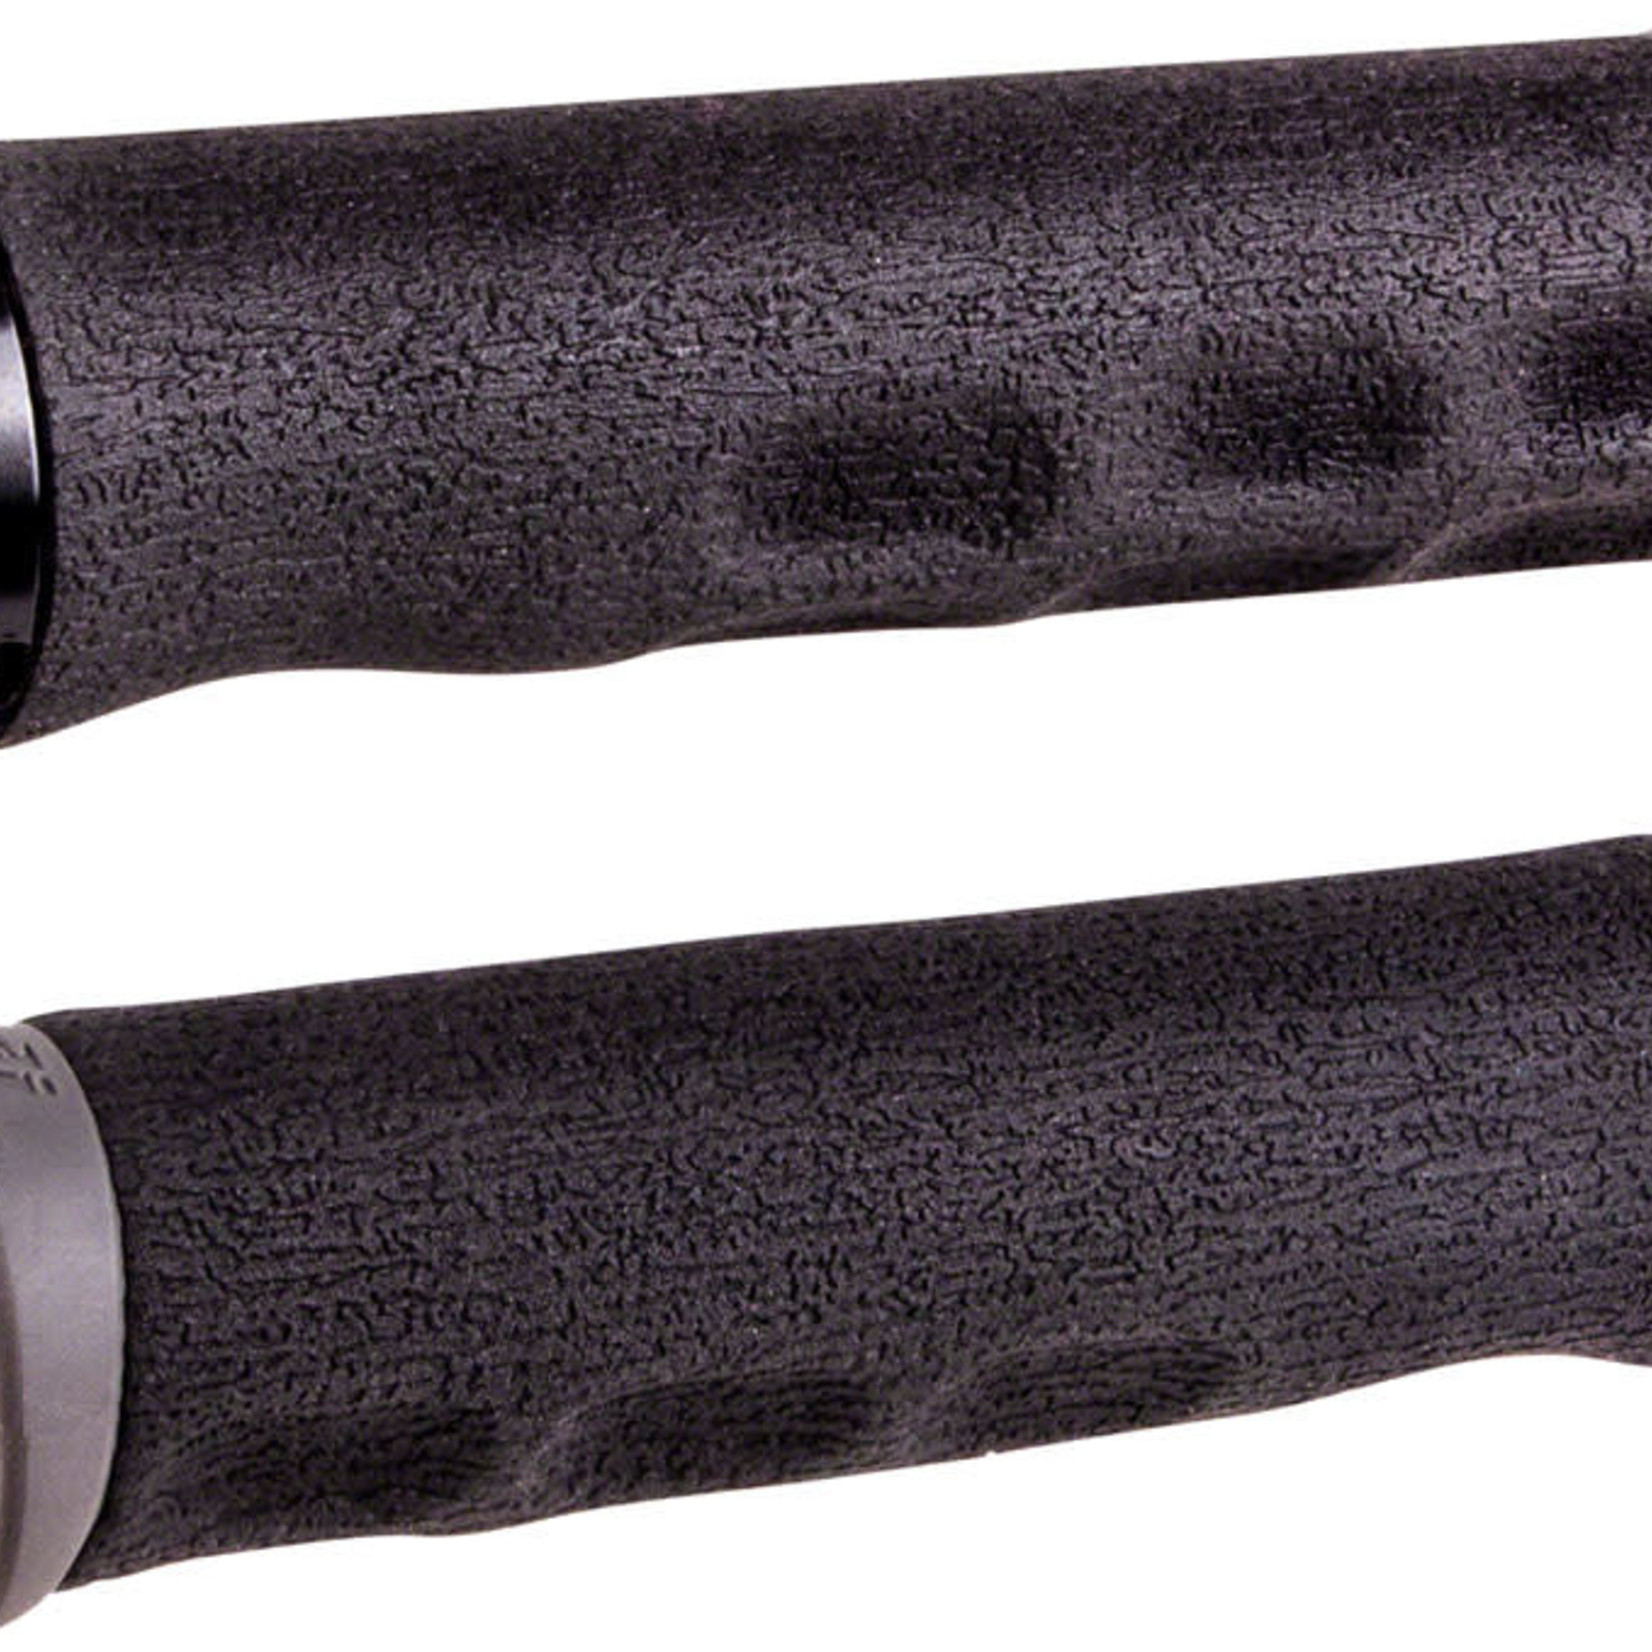 ODI Dread Lock F-1 Series MTB Grip - Black